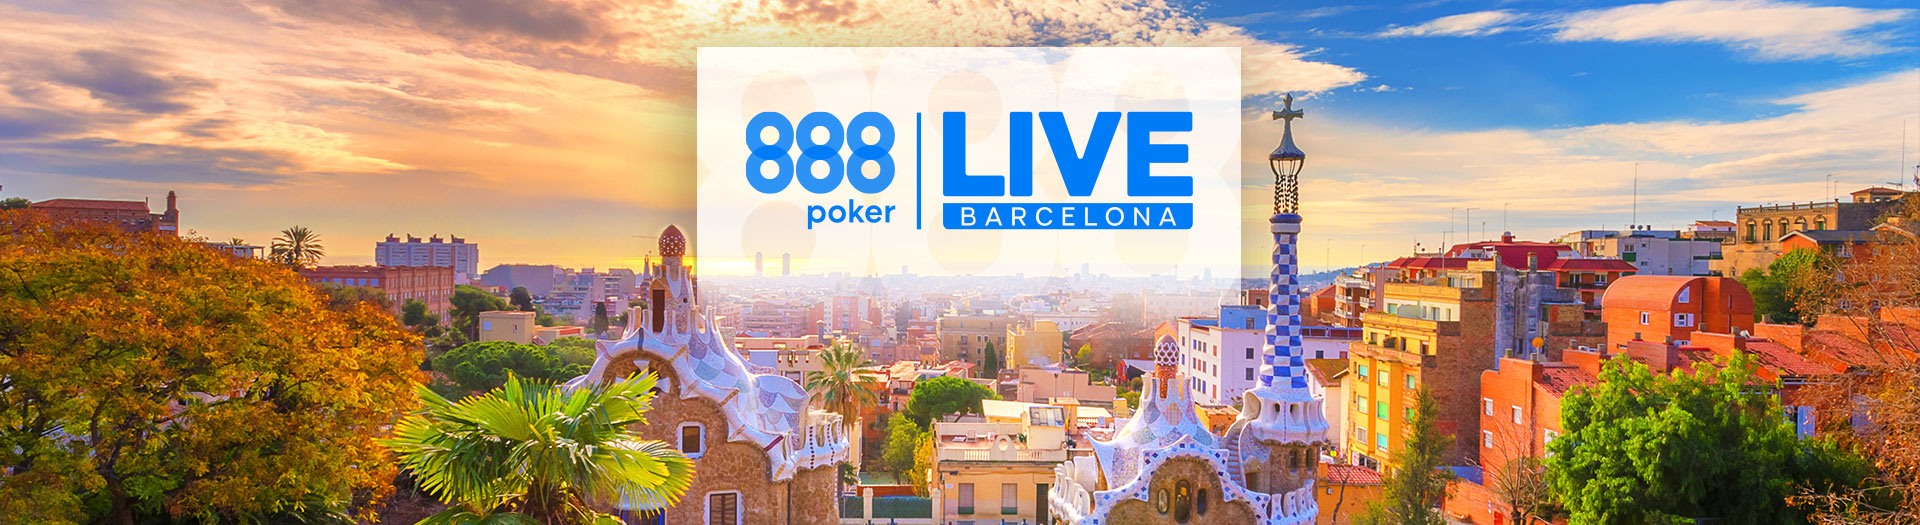 Live-Barcelona-LP-image-1678106214240_tcm1531-581376